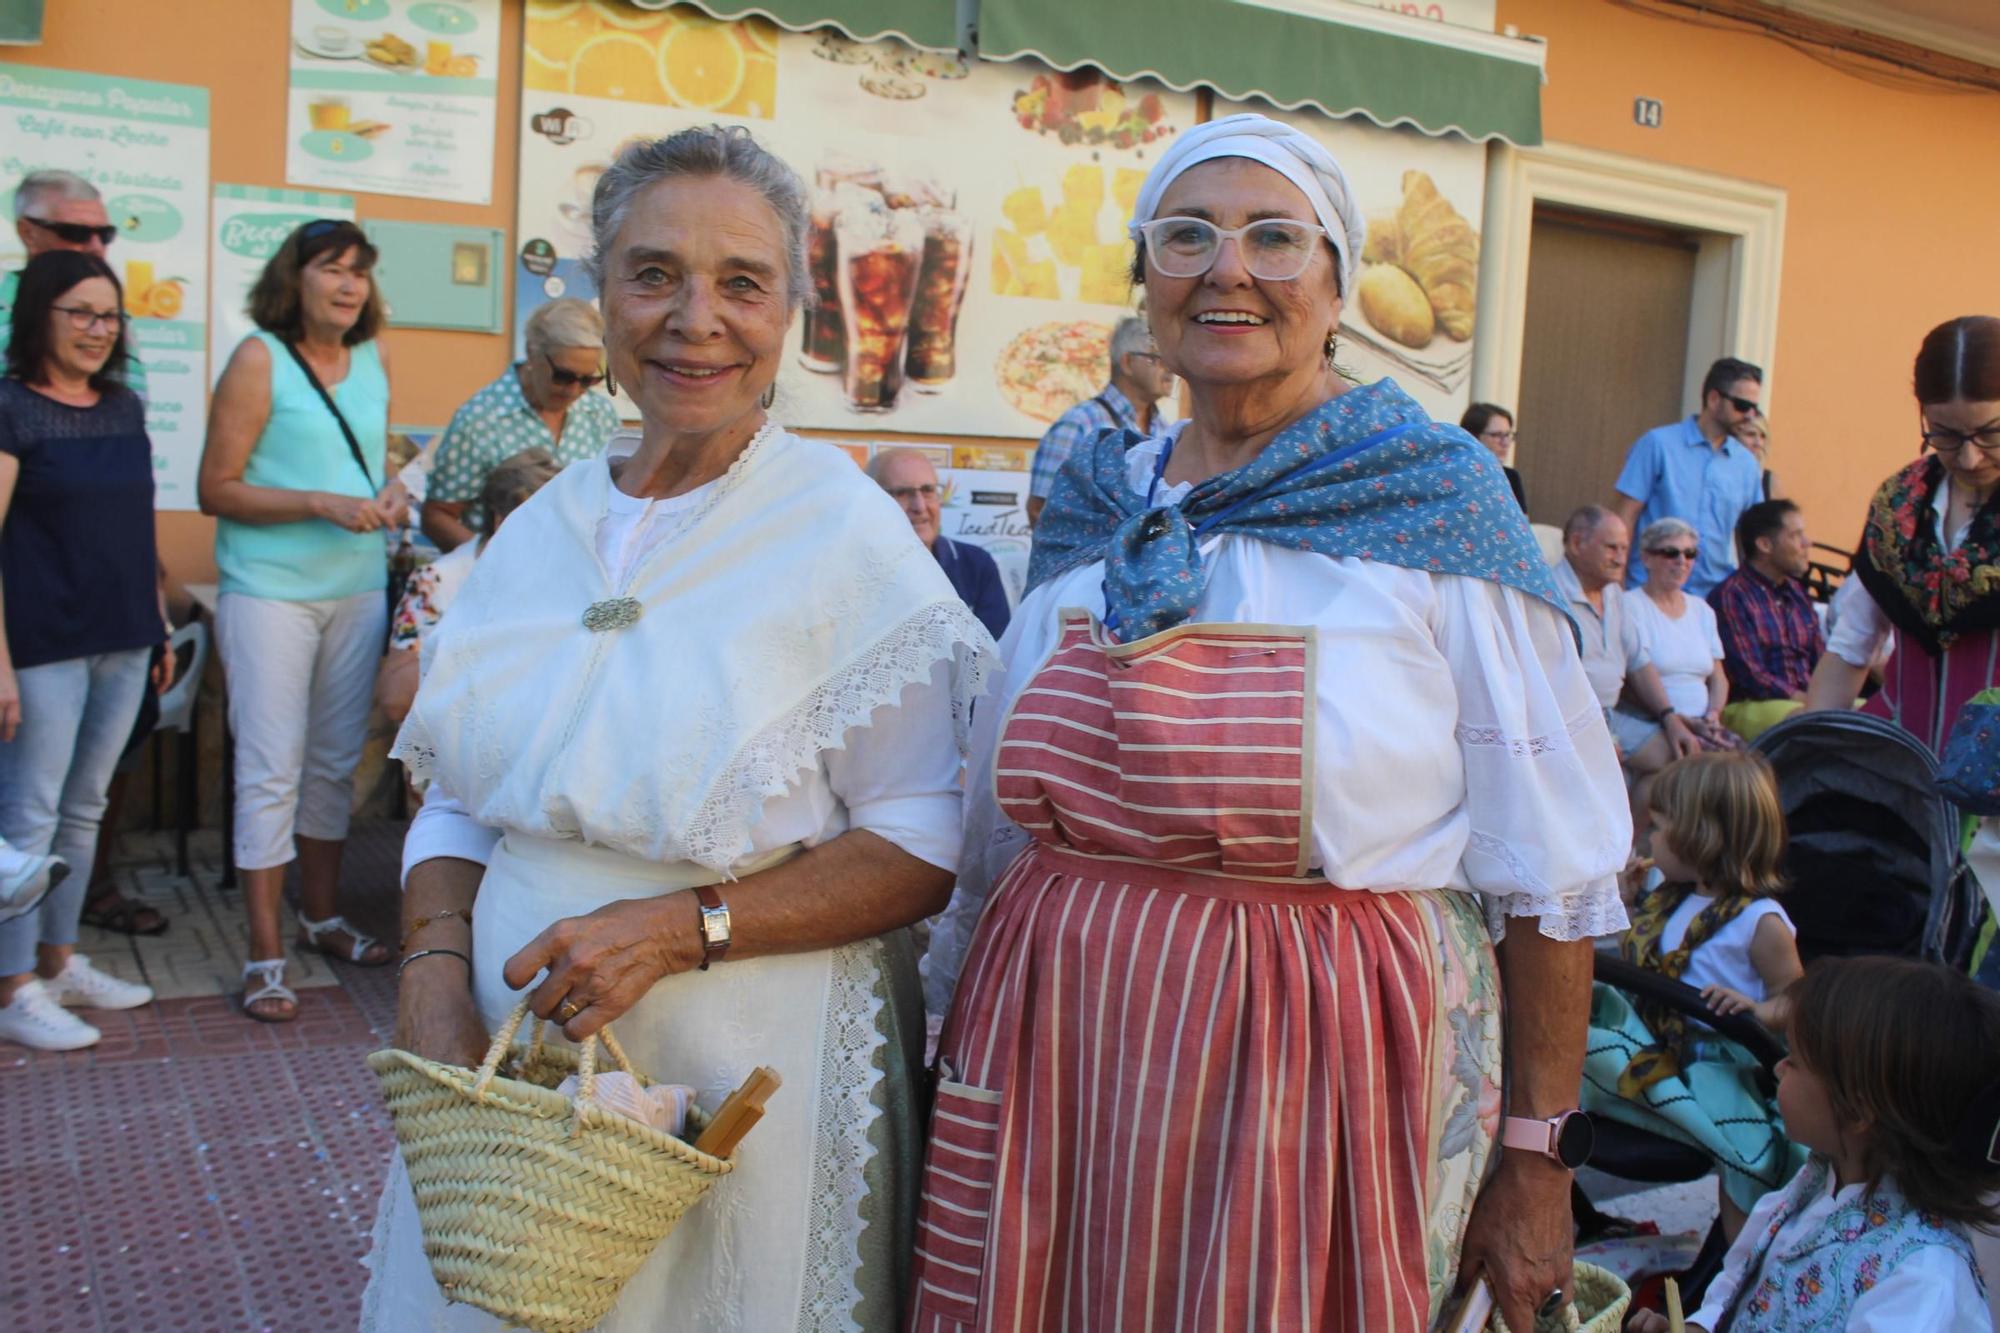 Fiestas de Orpesa: Las mejores imágenes del Pregó